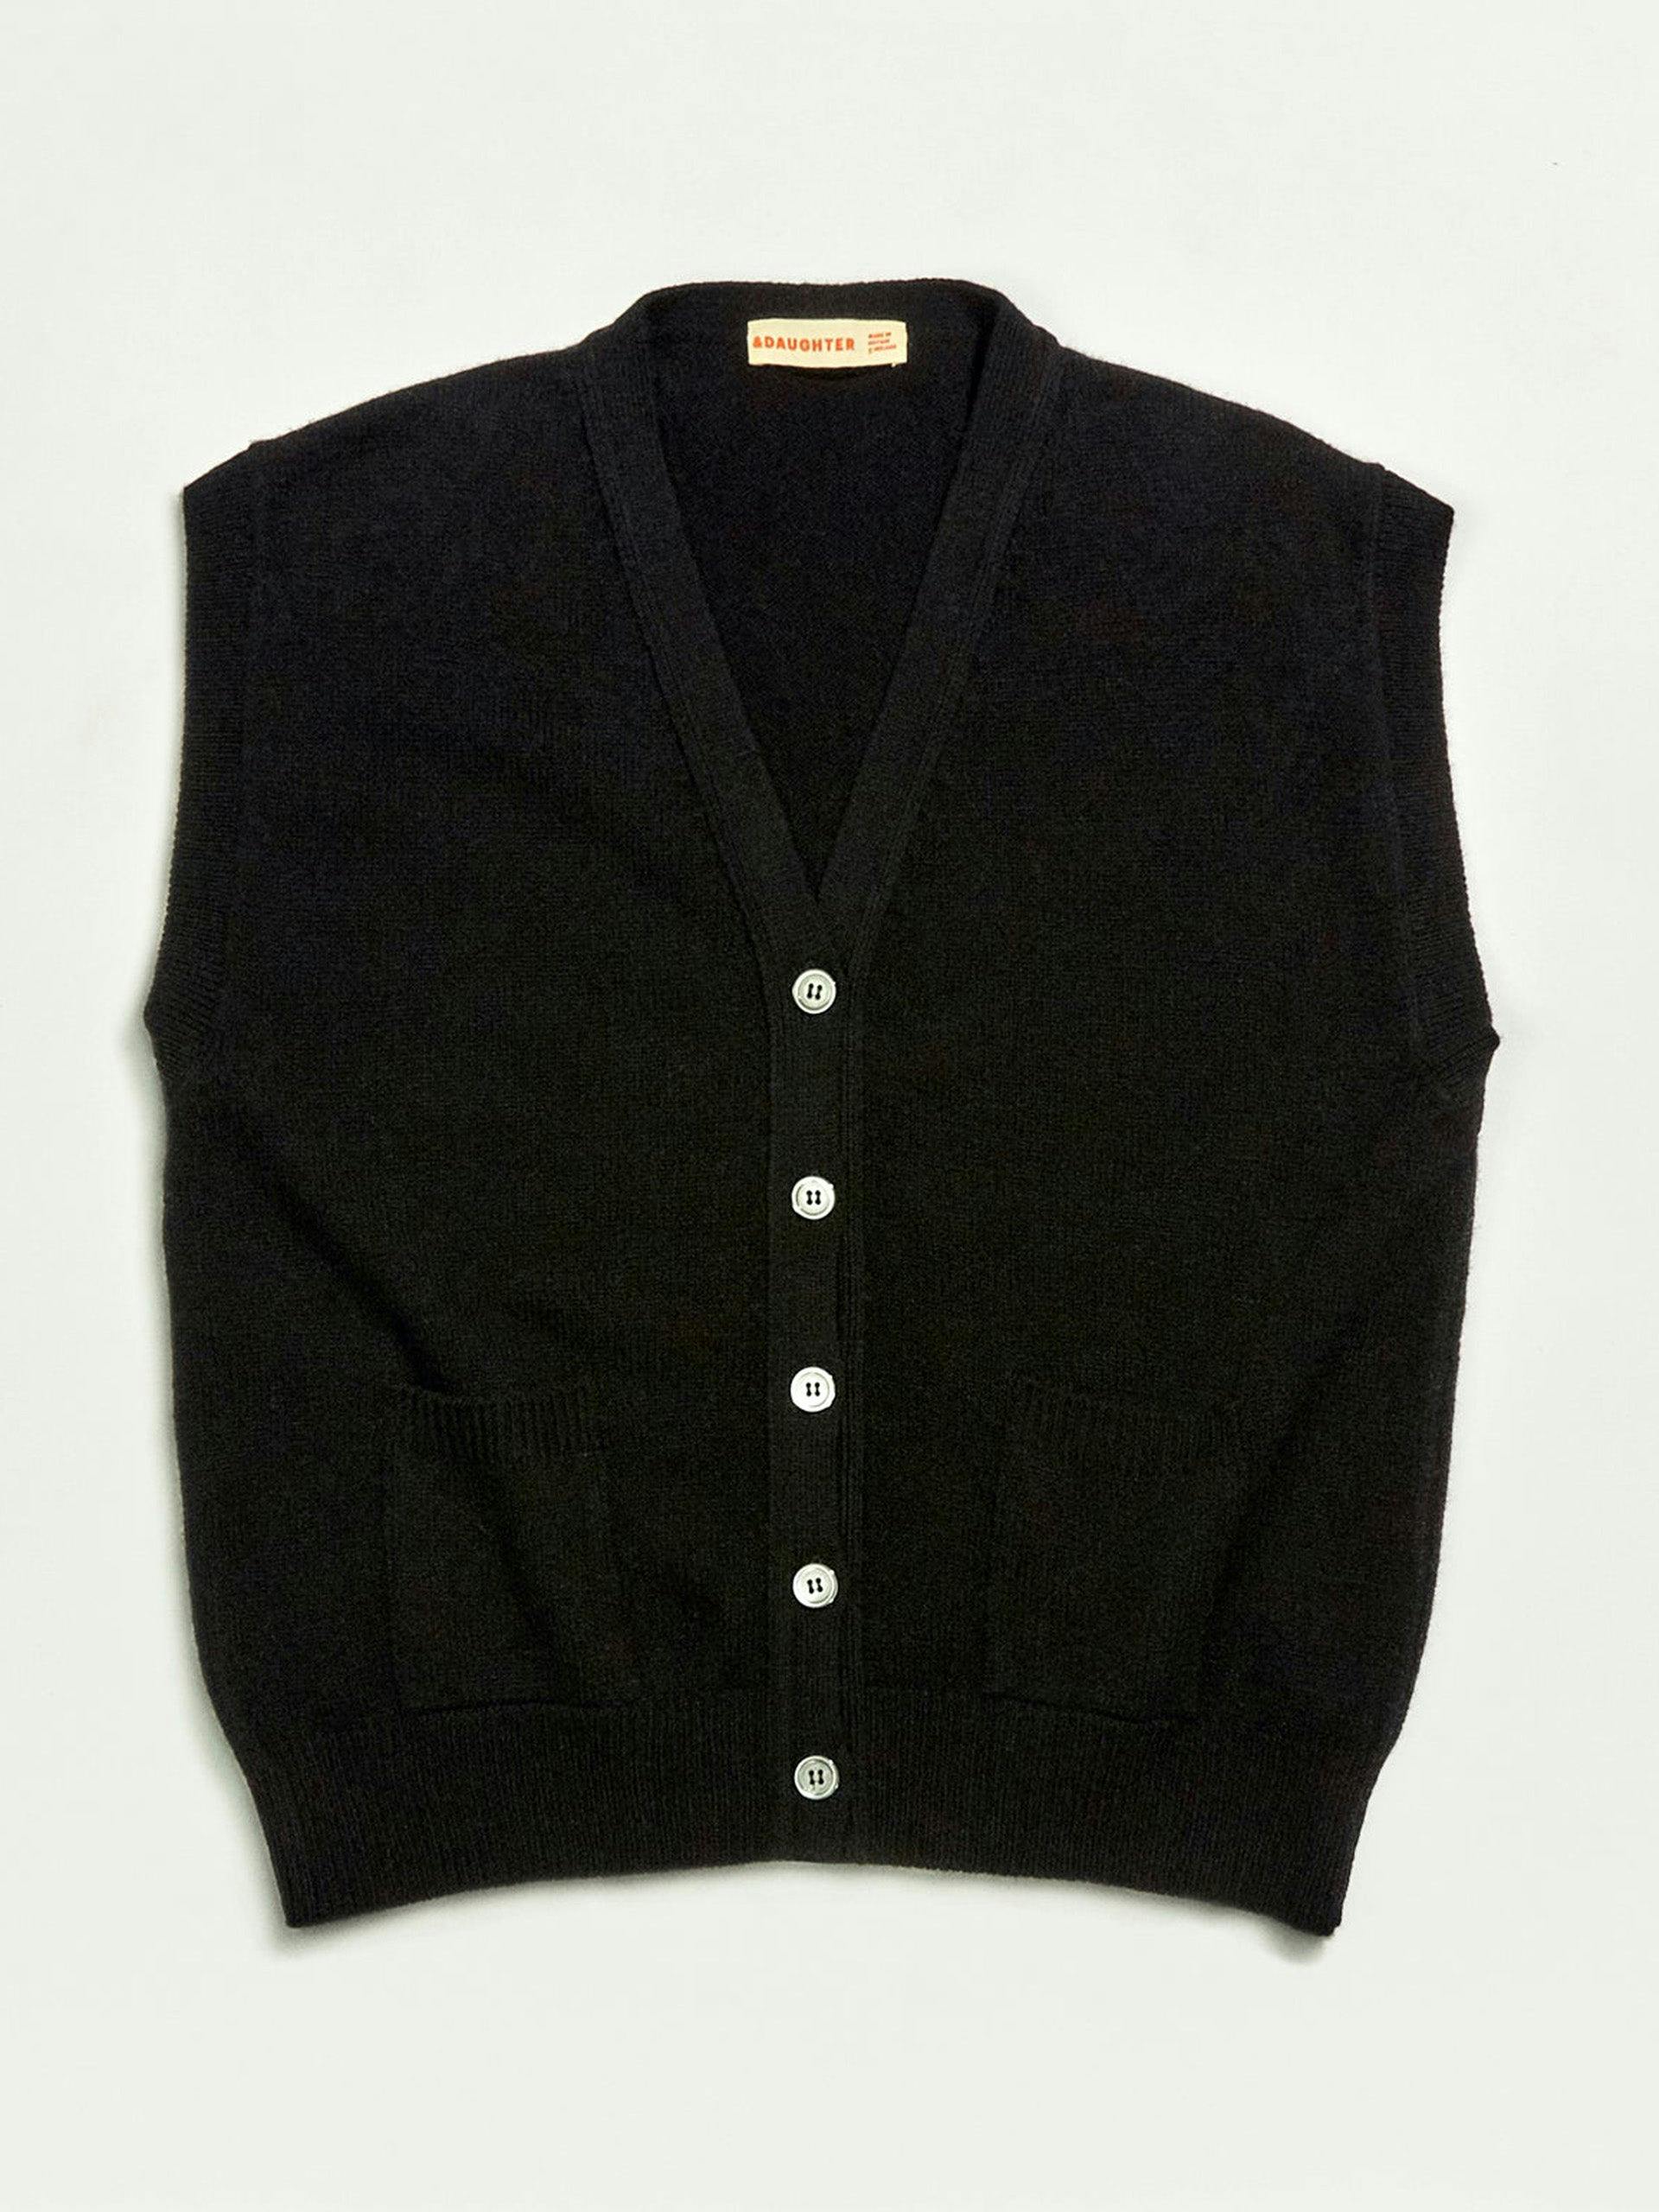 Black Wexford waistcoat